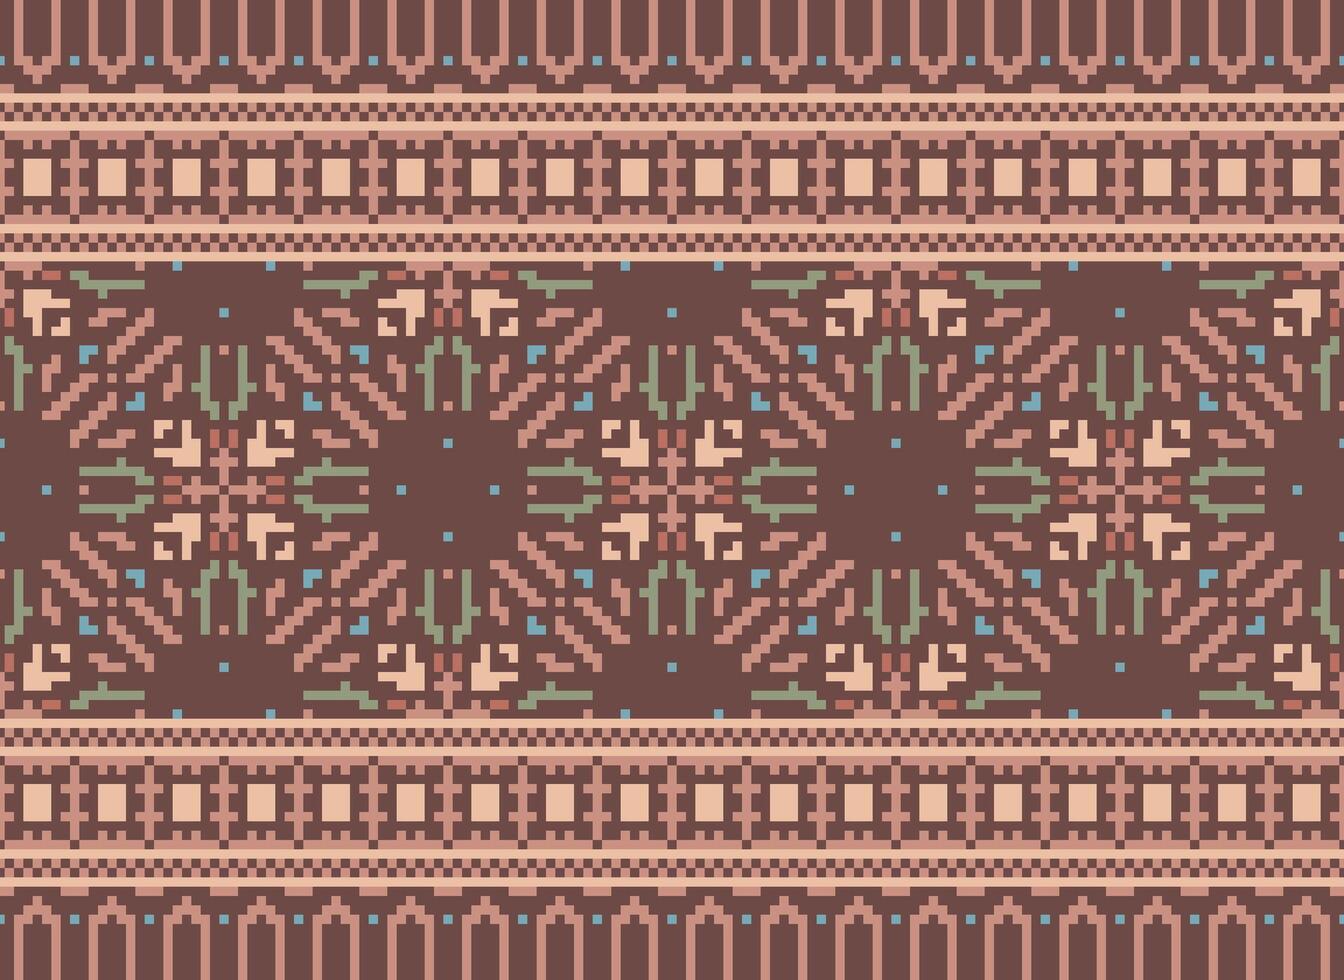 pixel annate attraversare punto tradizionale etnico modello paisley fiore ikat sfondo astratto azteco africano indonesiano indiano senza soluzione di continuità modello per tessuto Stampa stoffa vestito tappeto le tende e sarong vettore